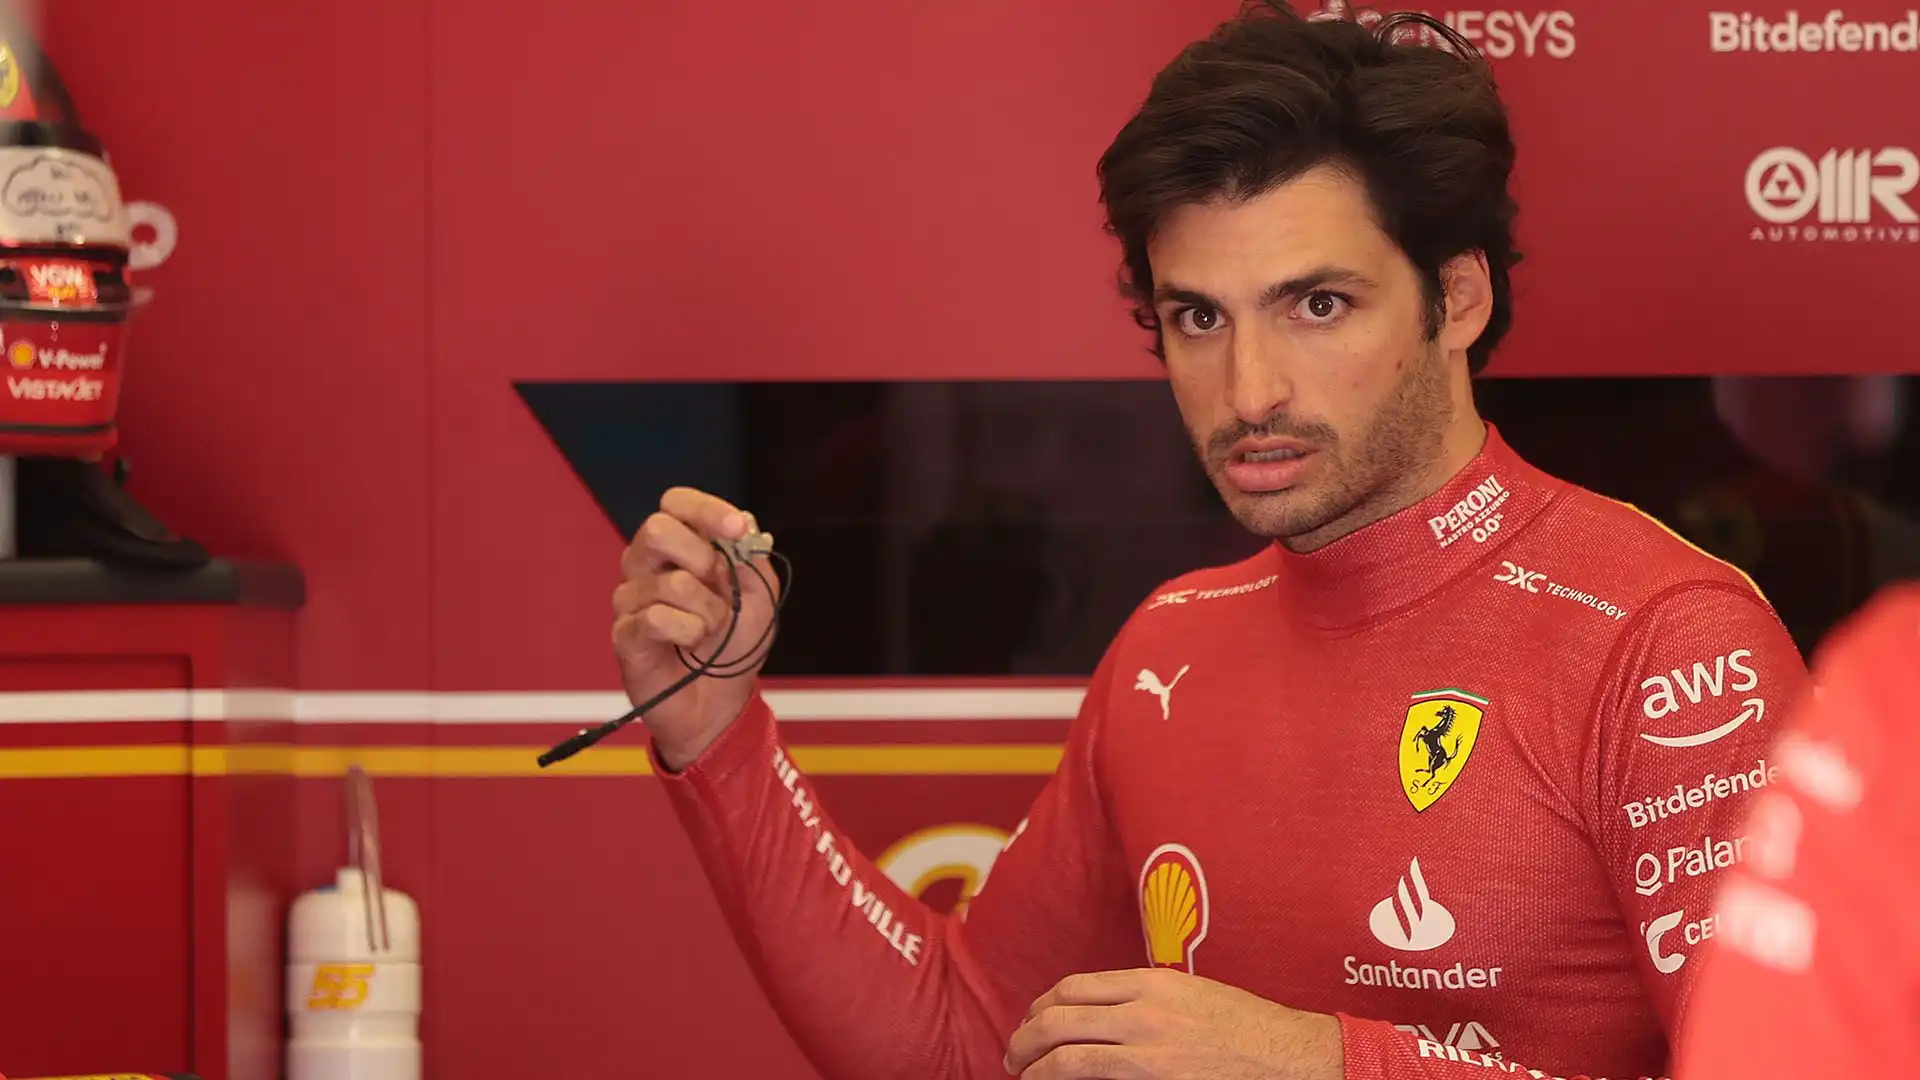 Marko ha escluso anche il pilota della Ferrari Carlos Sainz